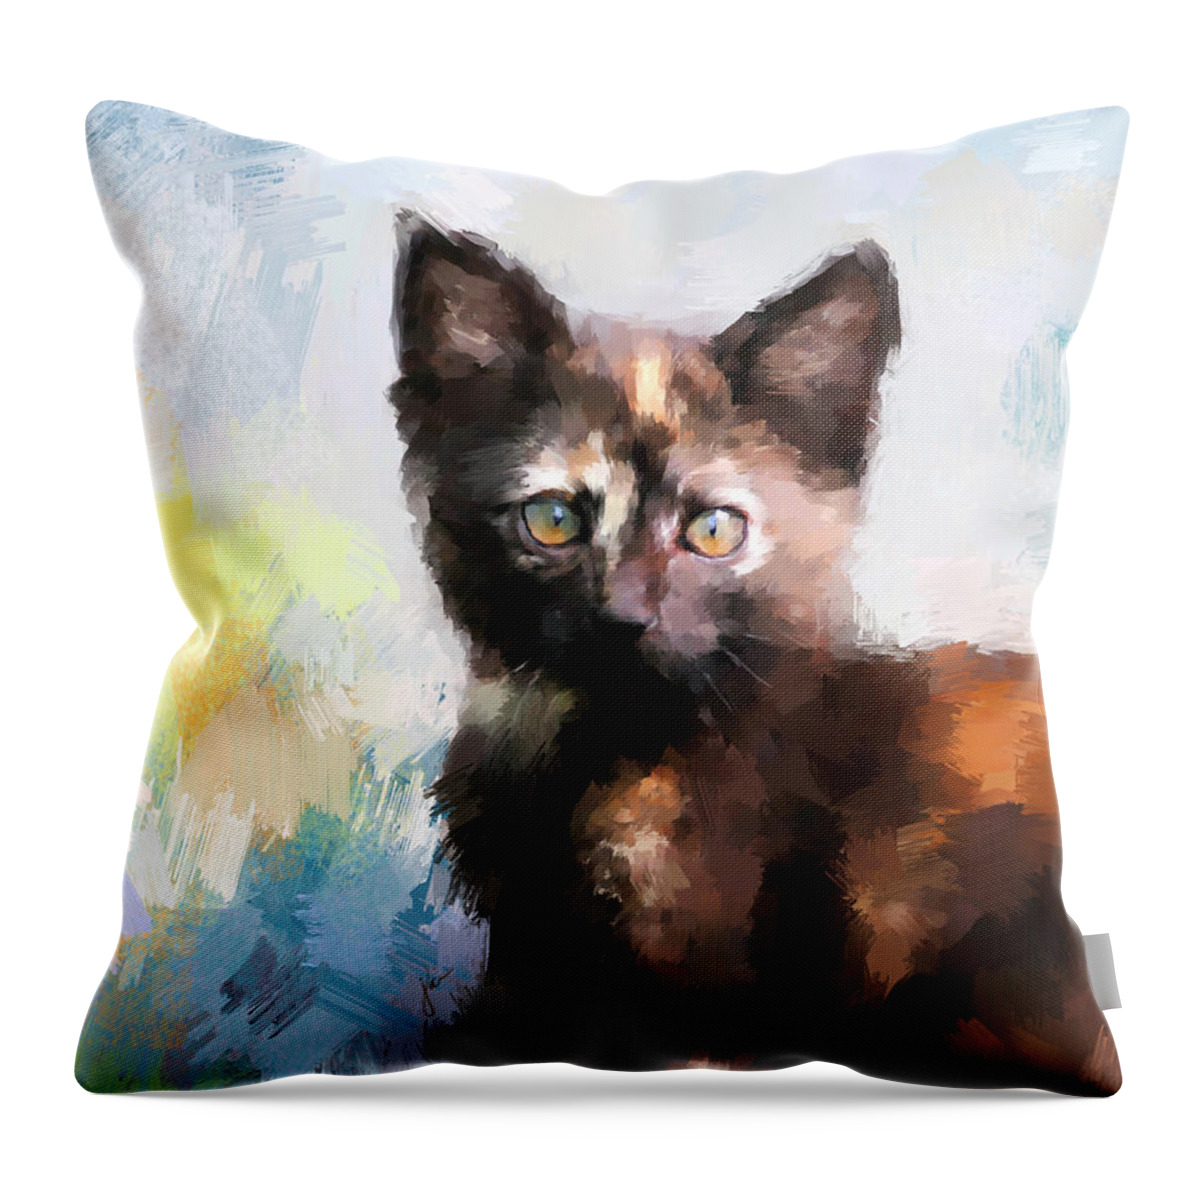 Kitten Throw Pillow featuring the painting Tortoiseshell Kitten #2 by Jai Johnson